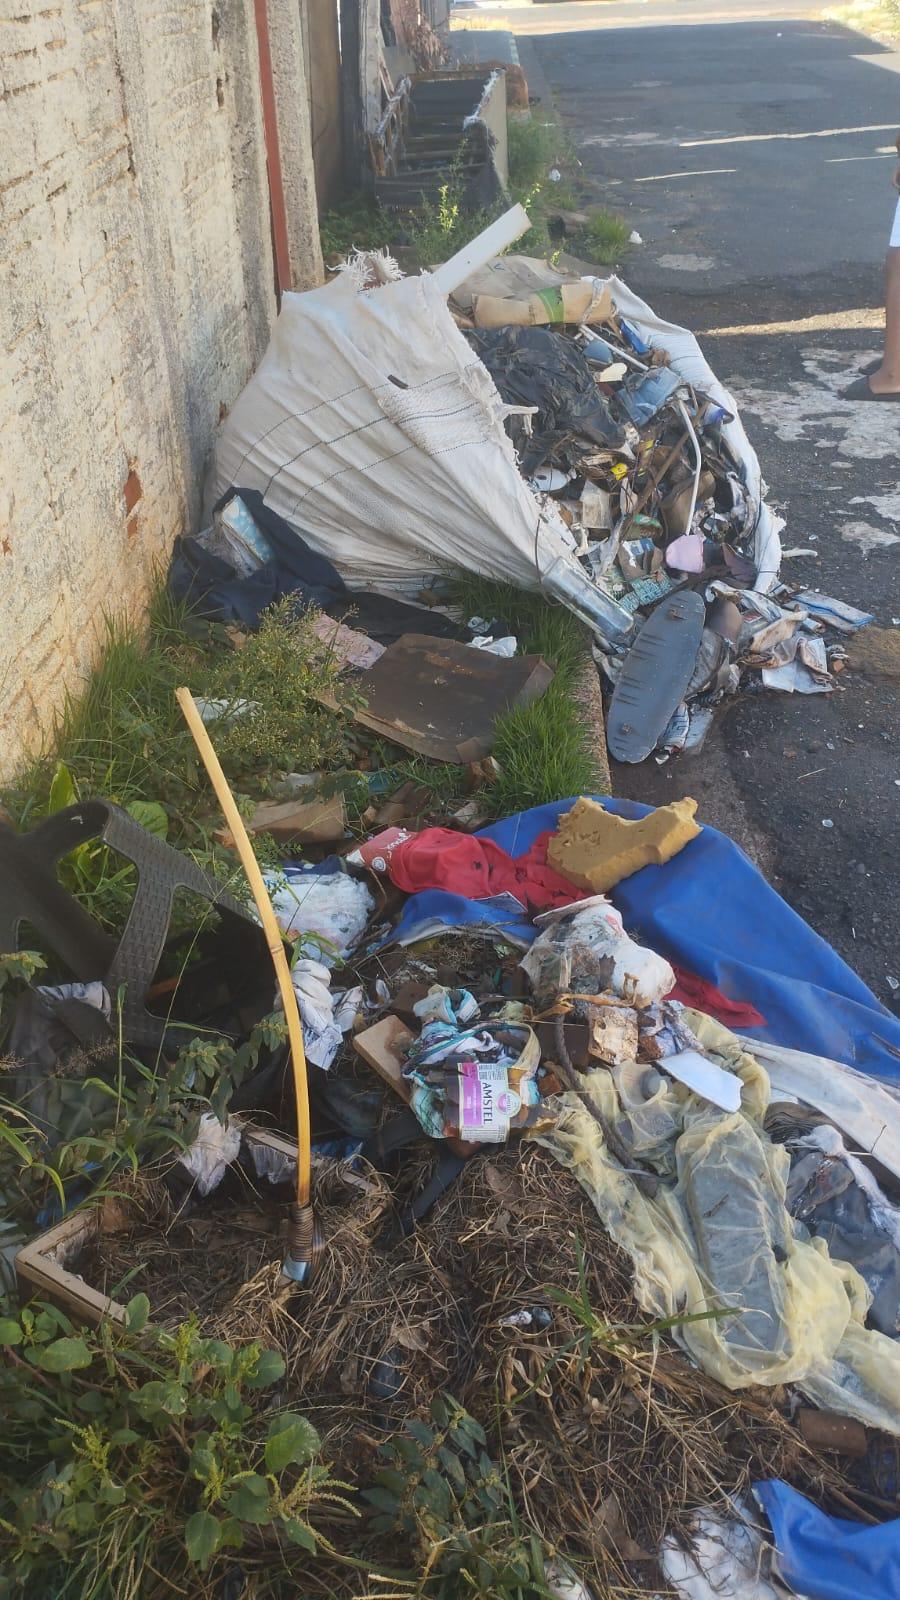 Moradora relata que uma residência abandonada na região da rua Cruzeiro tem causado preocupação na vizinhança devido à quantidade de lixo espalhada tanto na calçada quanto no interior do imóvel (Foto/Divulgação)